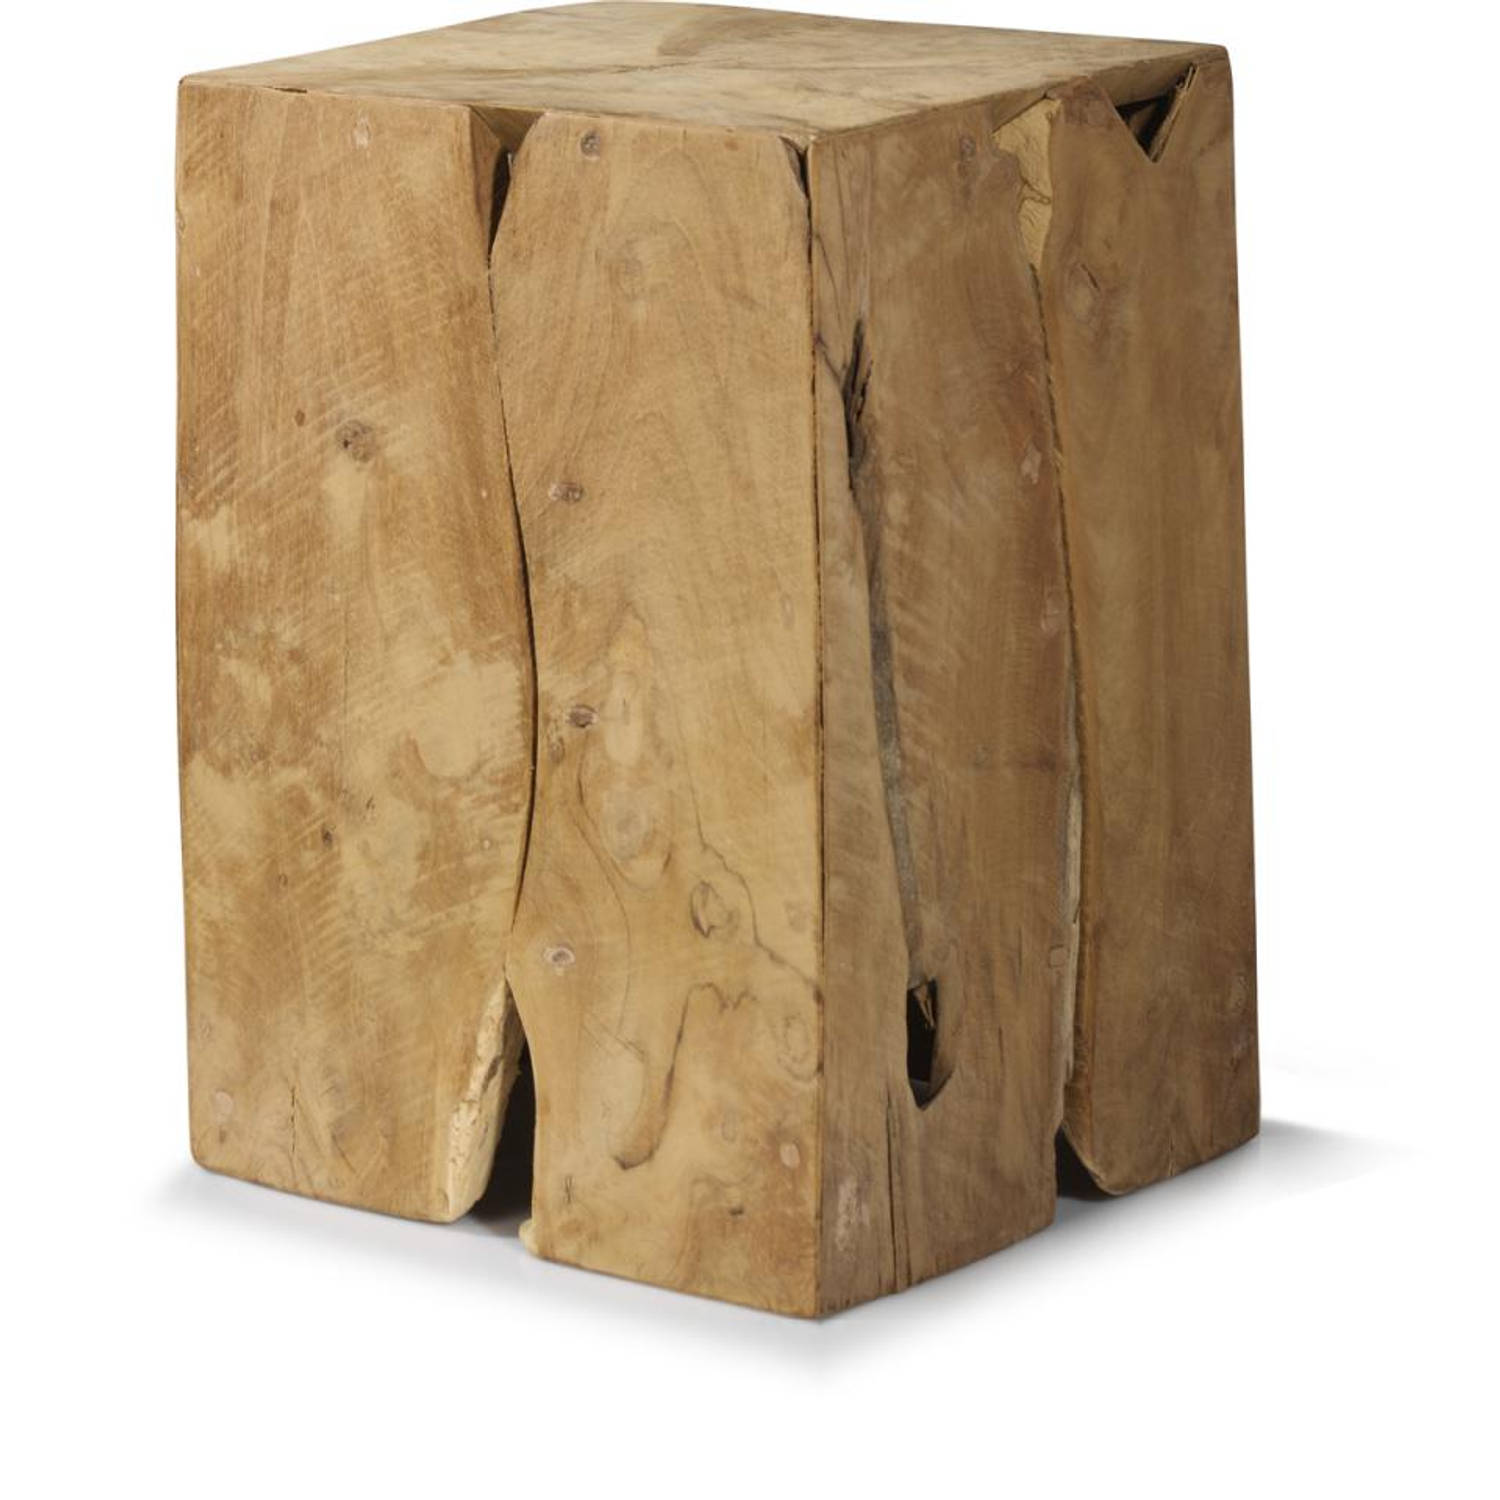 verzonden blok Buiten adem In den meisten Fällen tausend nimm Medizin houten blok tafel Werdegang  Garantie ankommen